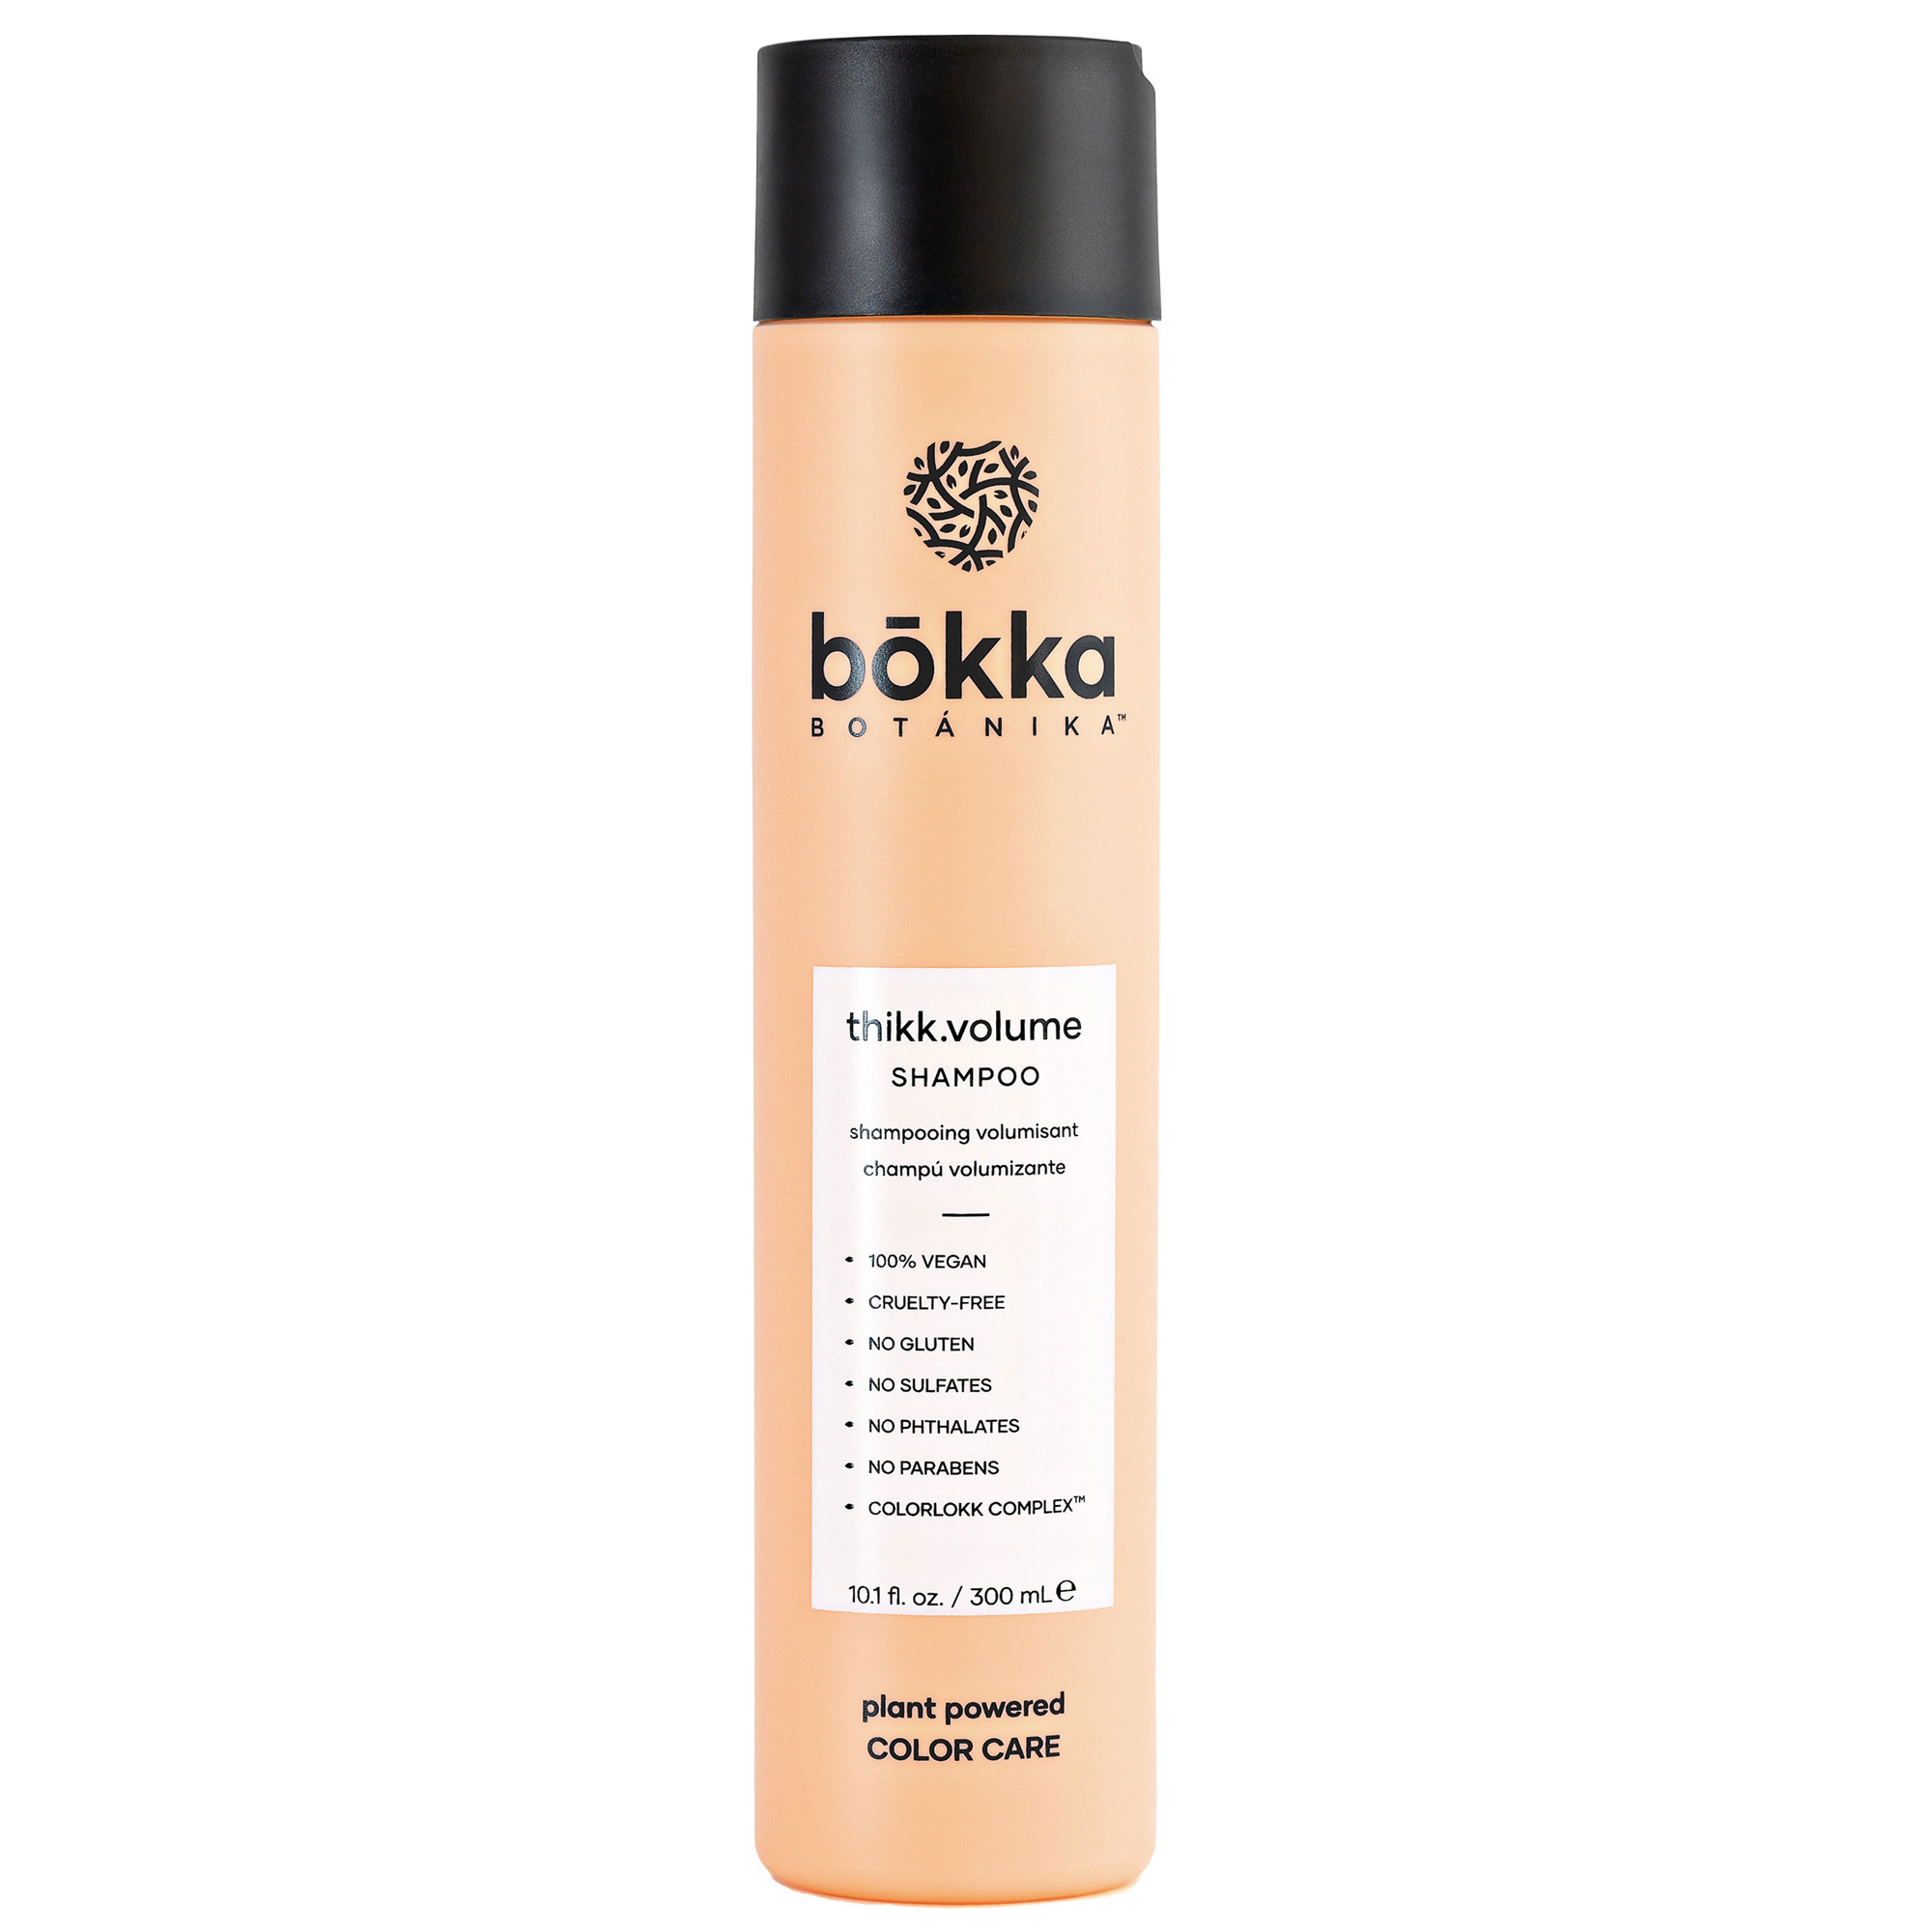 bokka BOTANIKA Thikk.Volume Shampoo 10.1oz